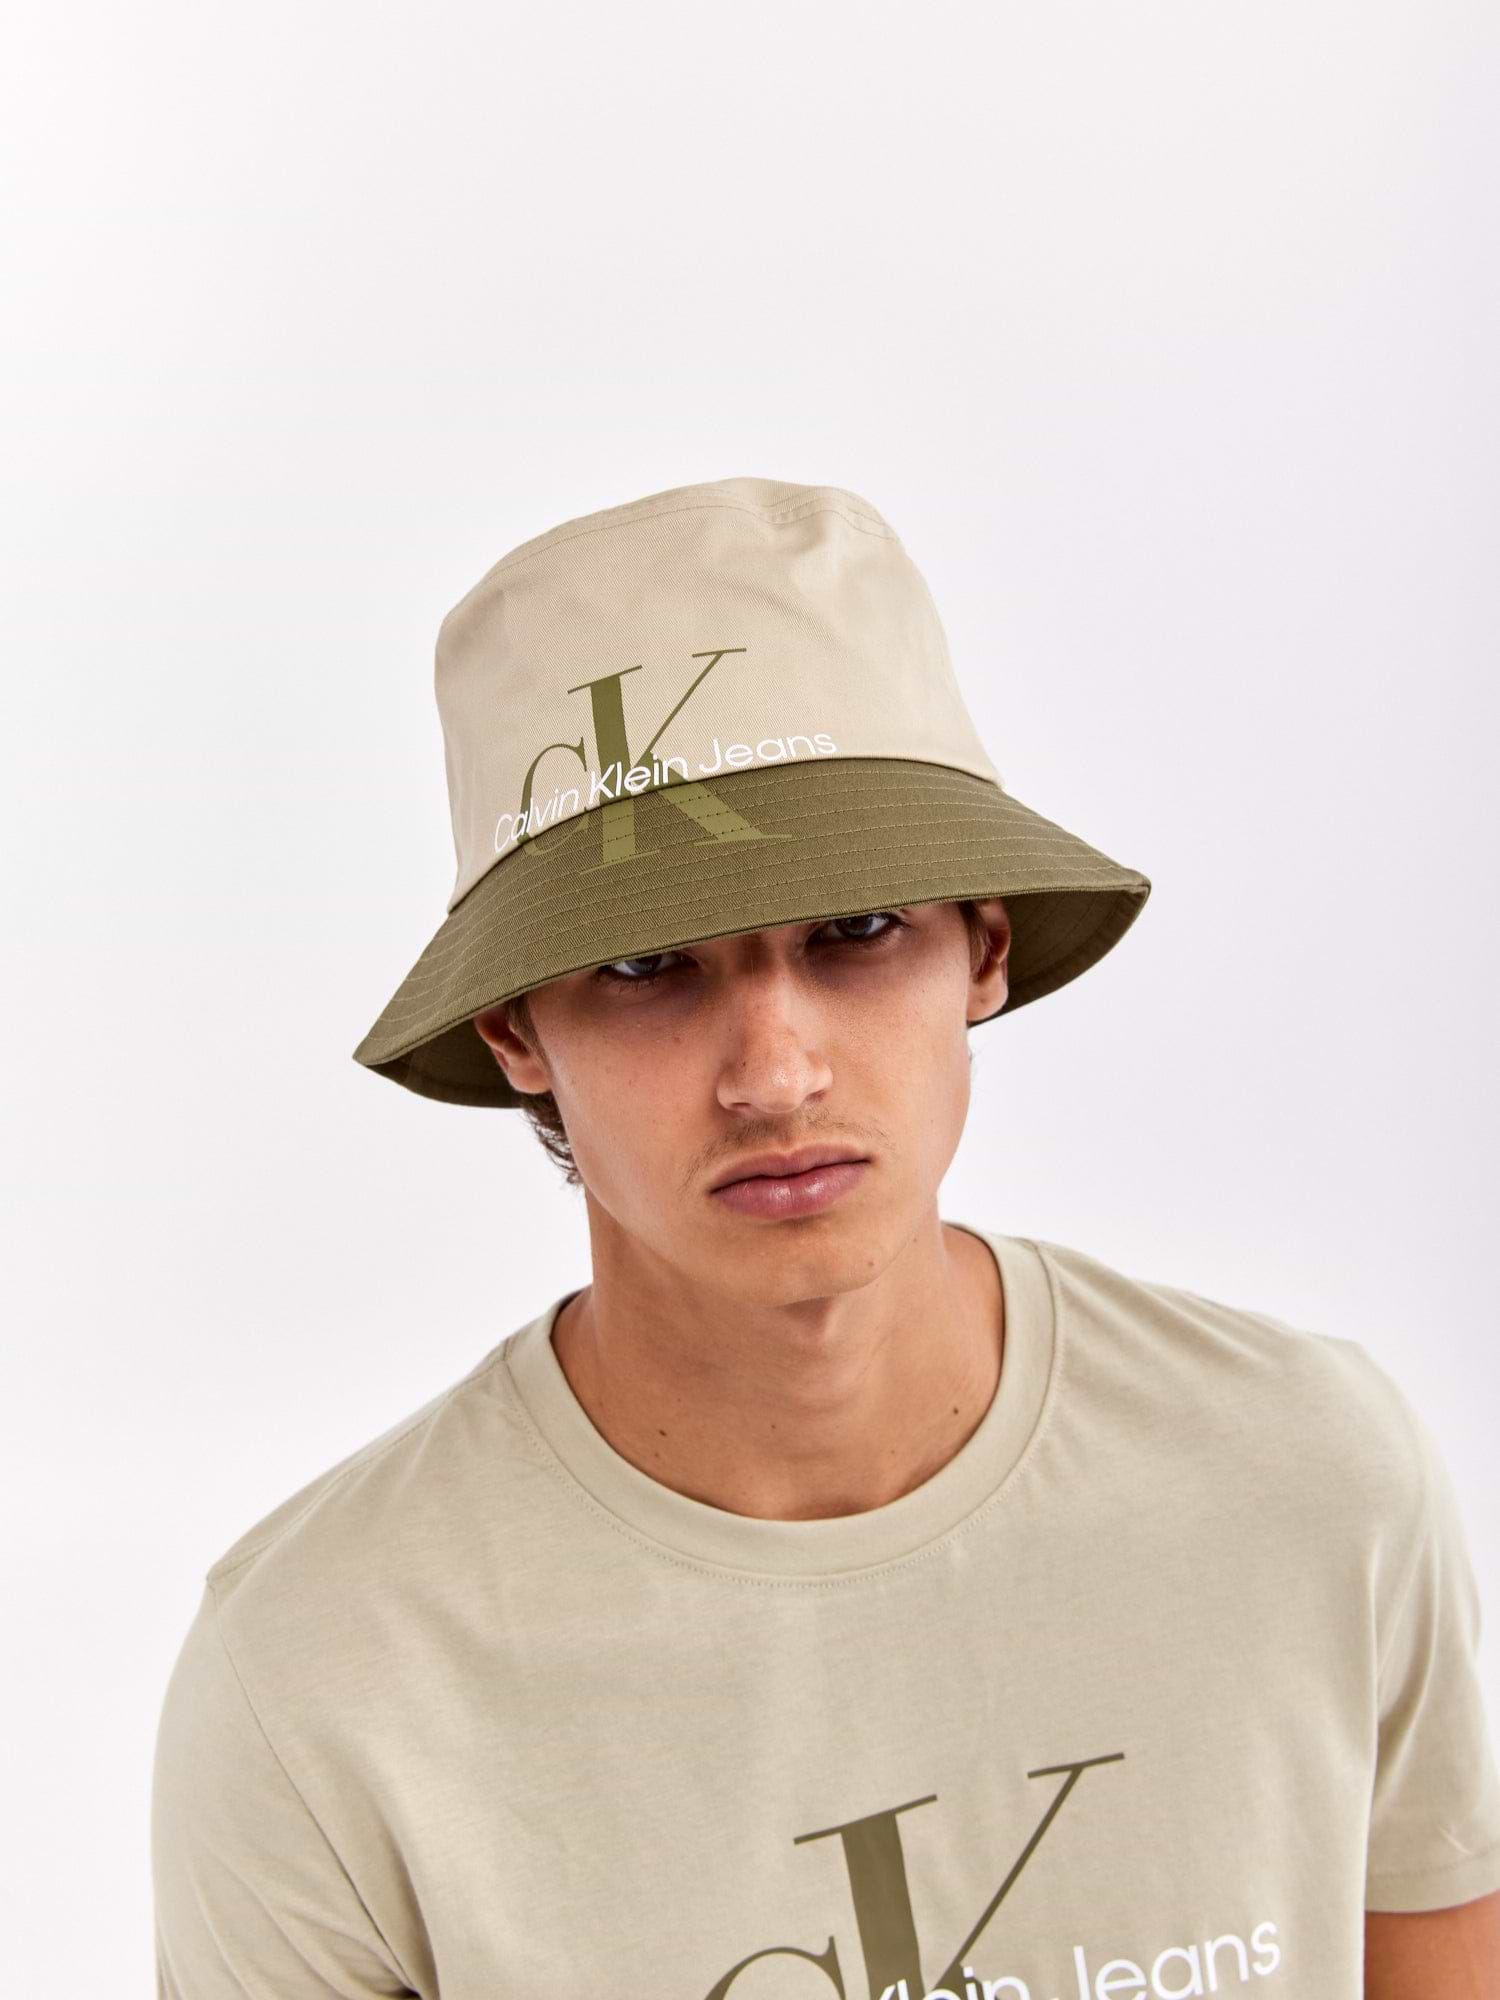 כובע באקט עם לוגו מודפס / יוניסקס